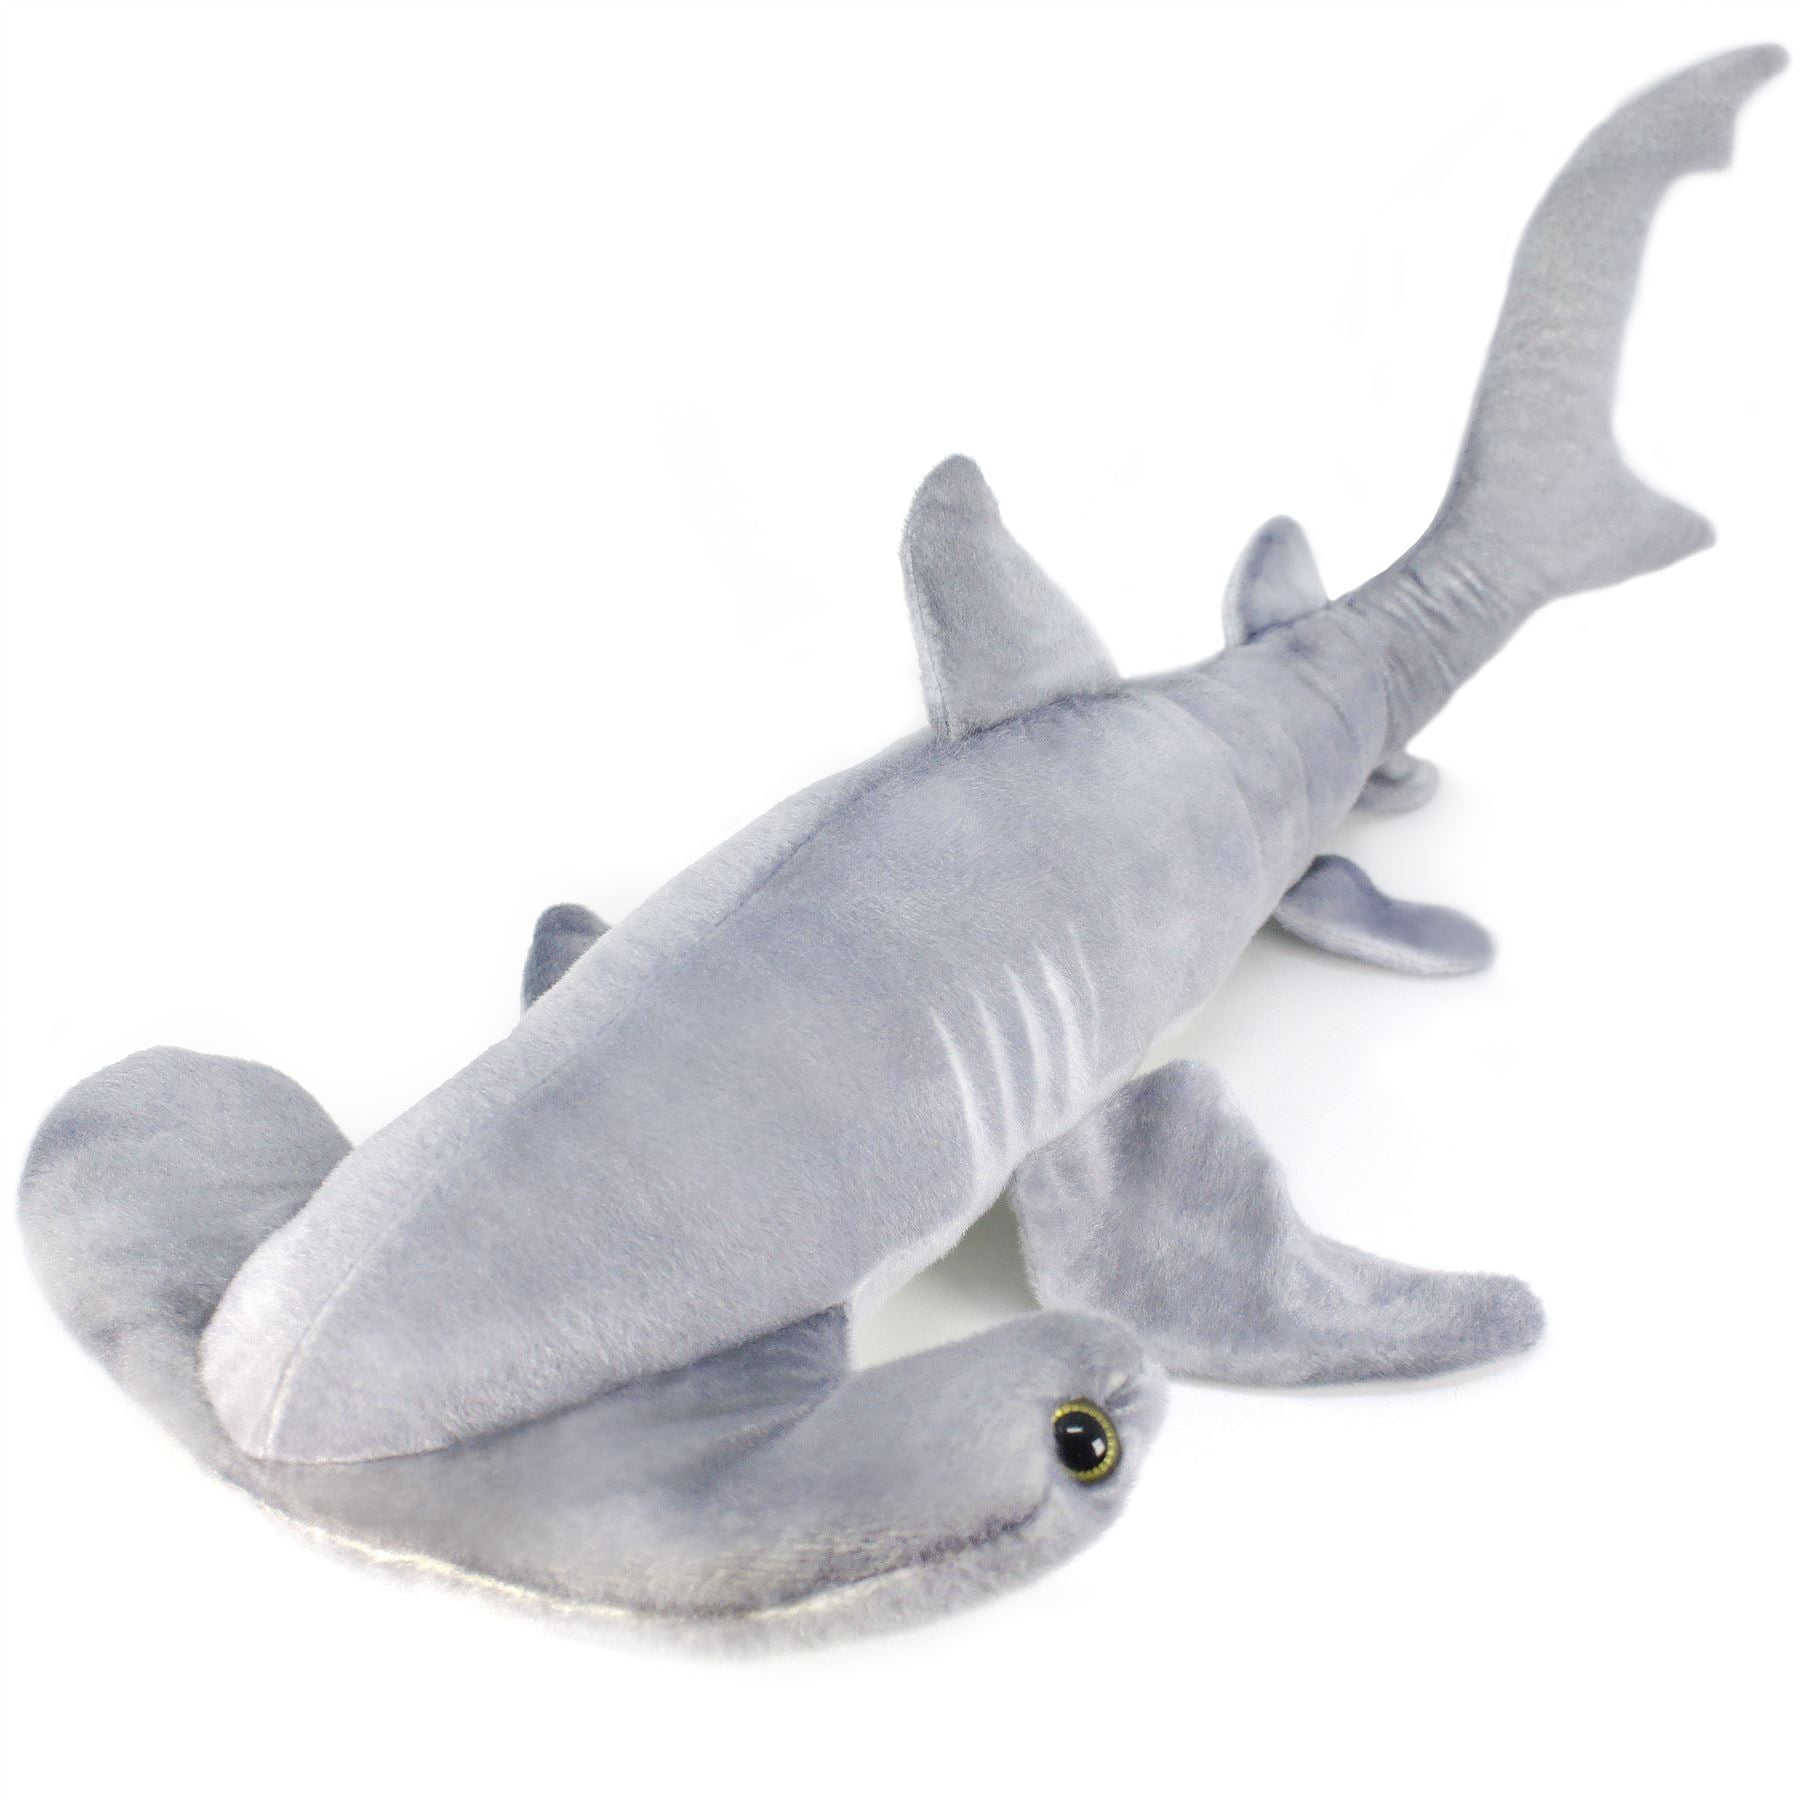 VIAHART Sammy The Shark3 Foot Long Great White Stuffed Animal Plush for sale online 